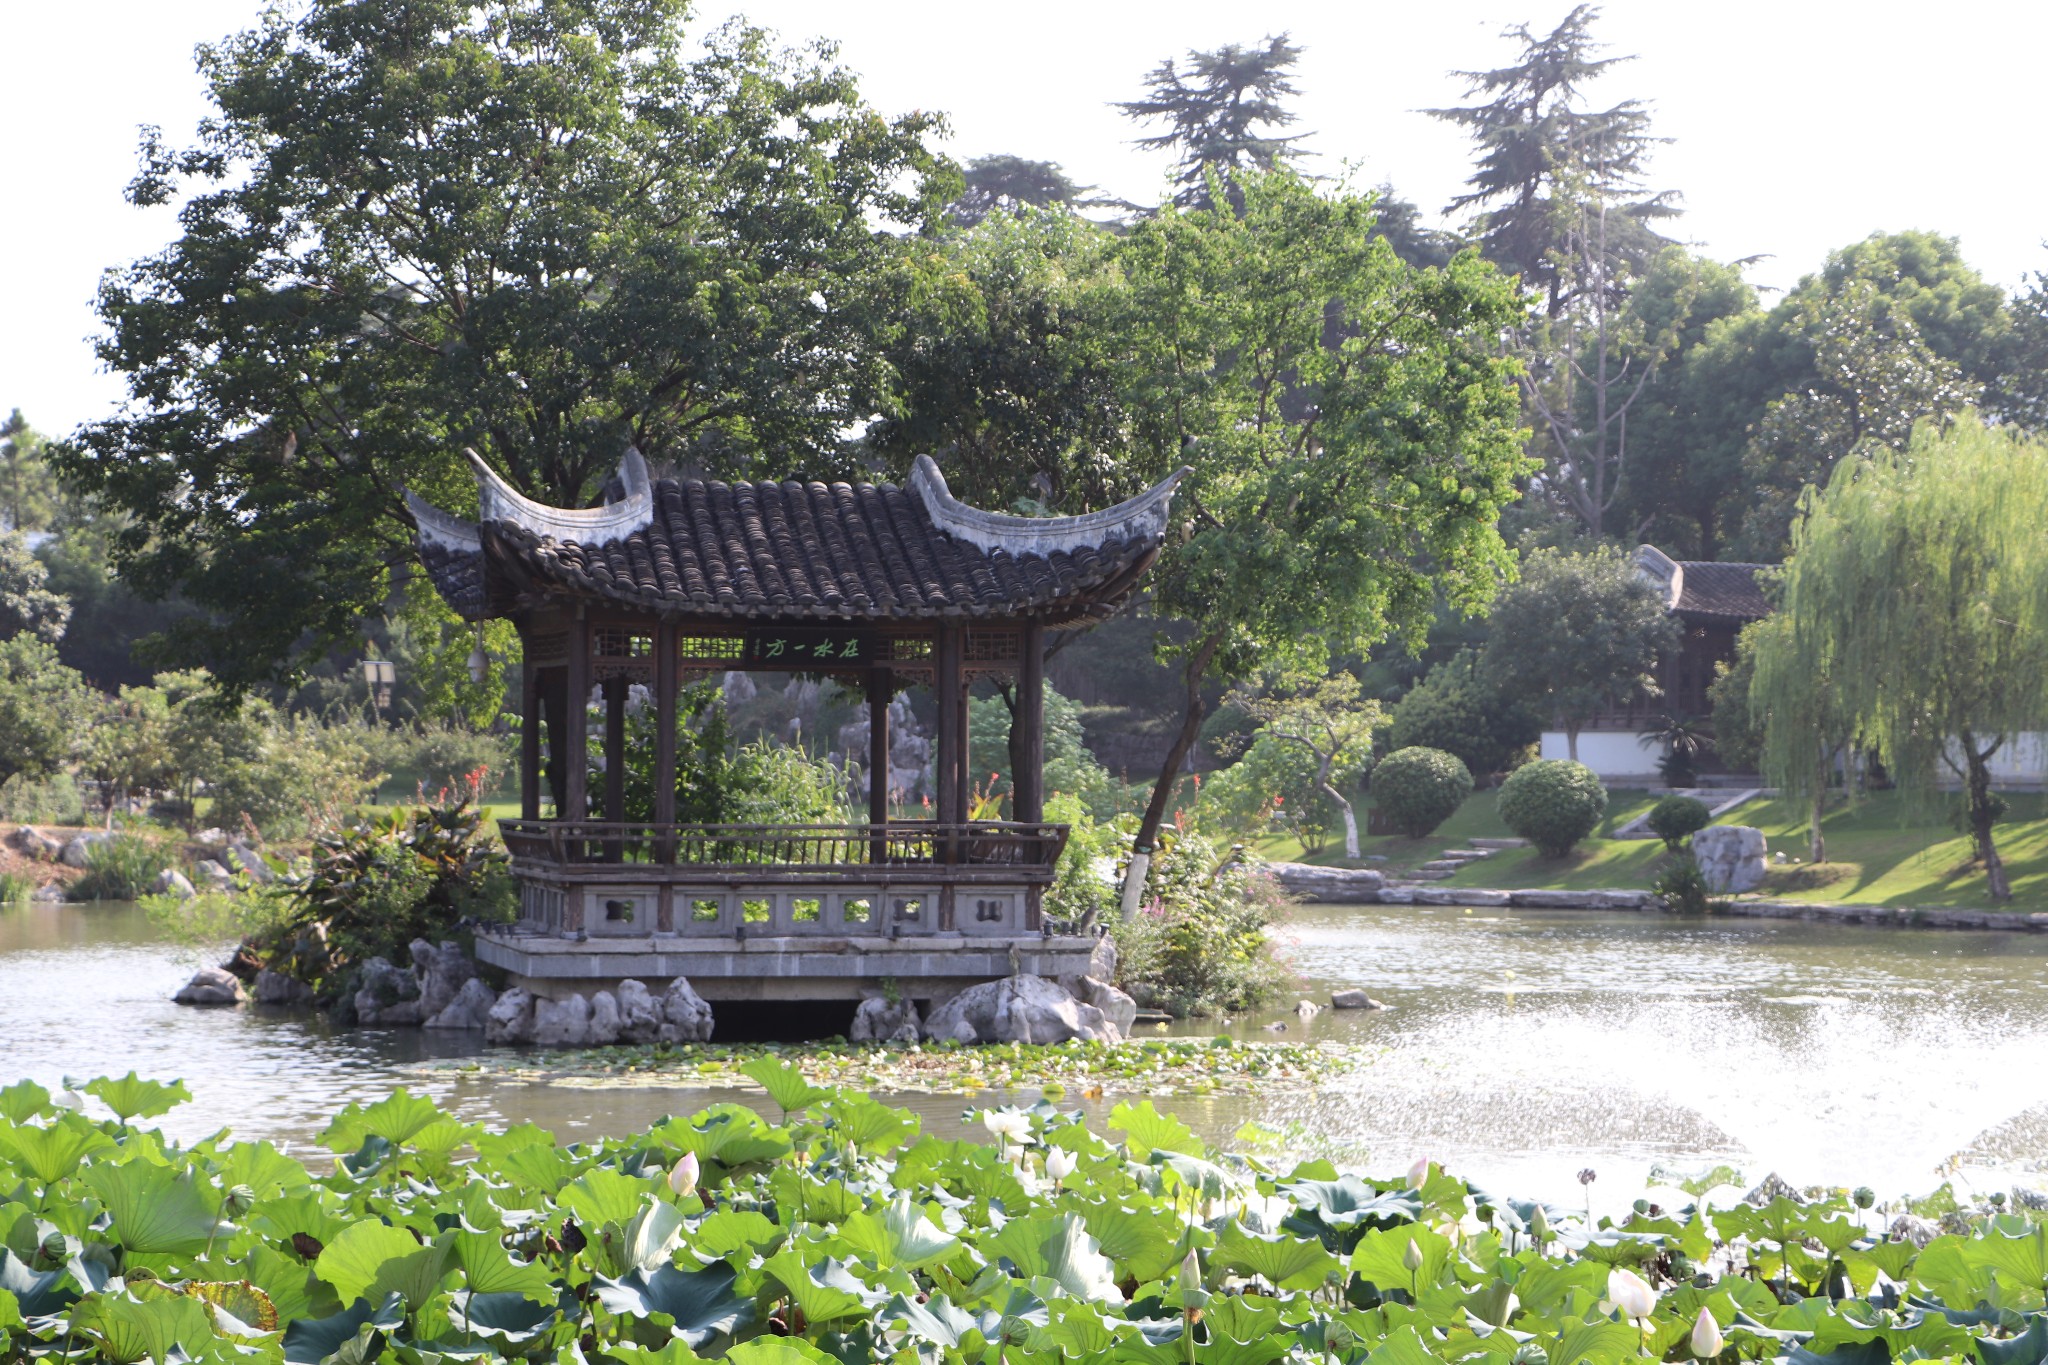 走访南京最好的私家花园——愚园